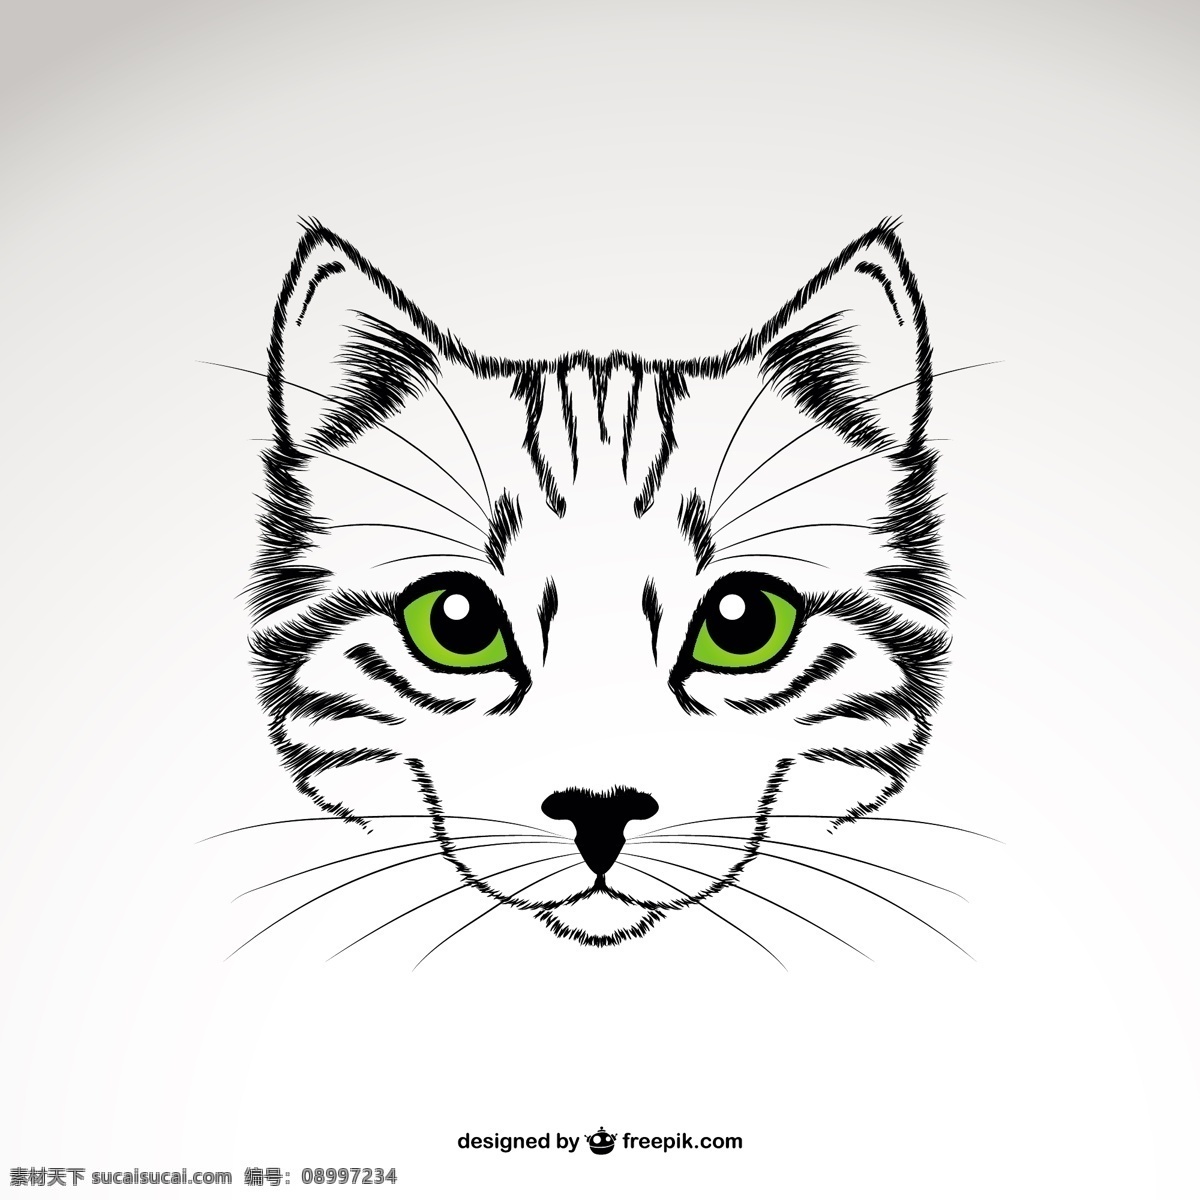 用绿眼睛的猫 绿色 模板 猫 动物 线 卡通 艺术 纹身 人物 可爱 图形 布局 符号 图形设计 眼睛 宠物 形状 卡通人物 白色